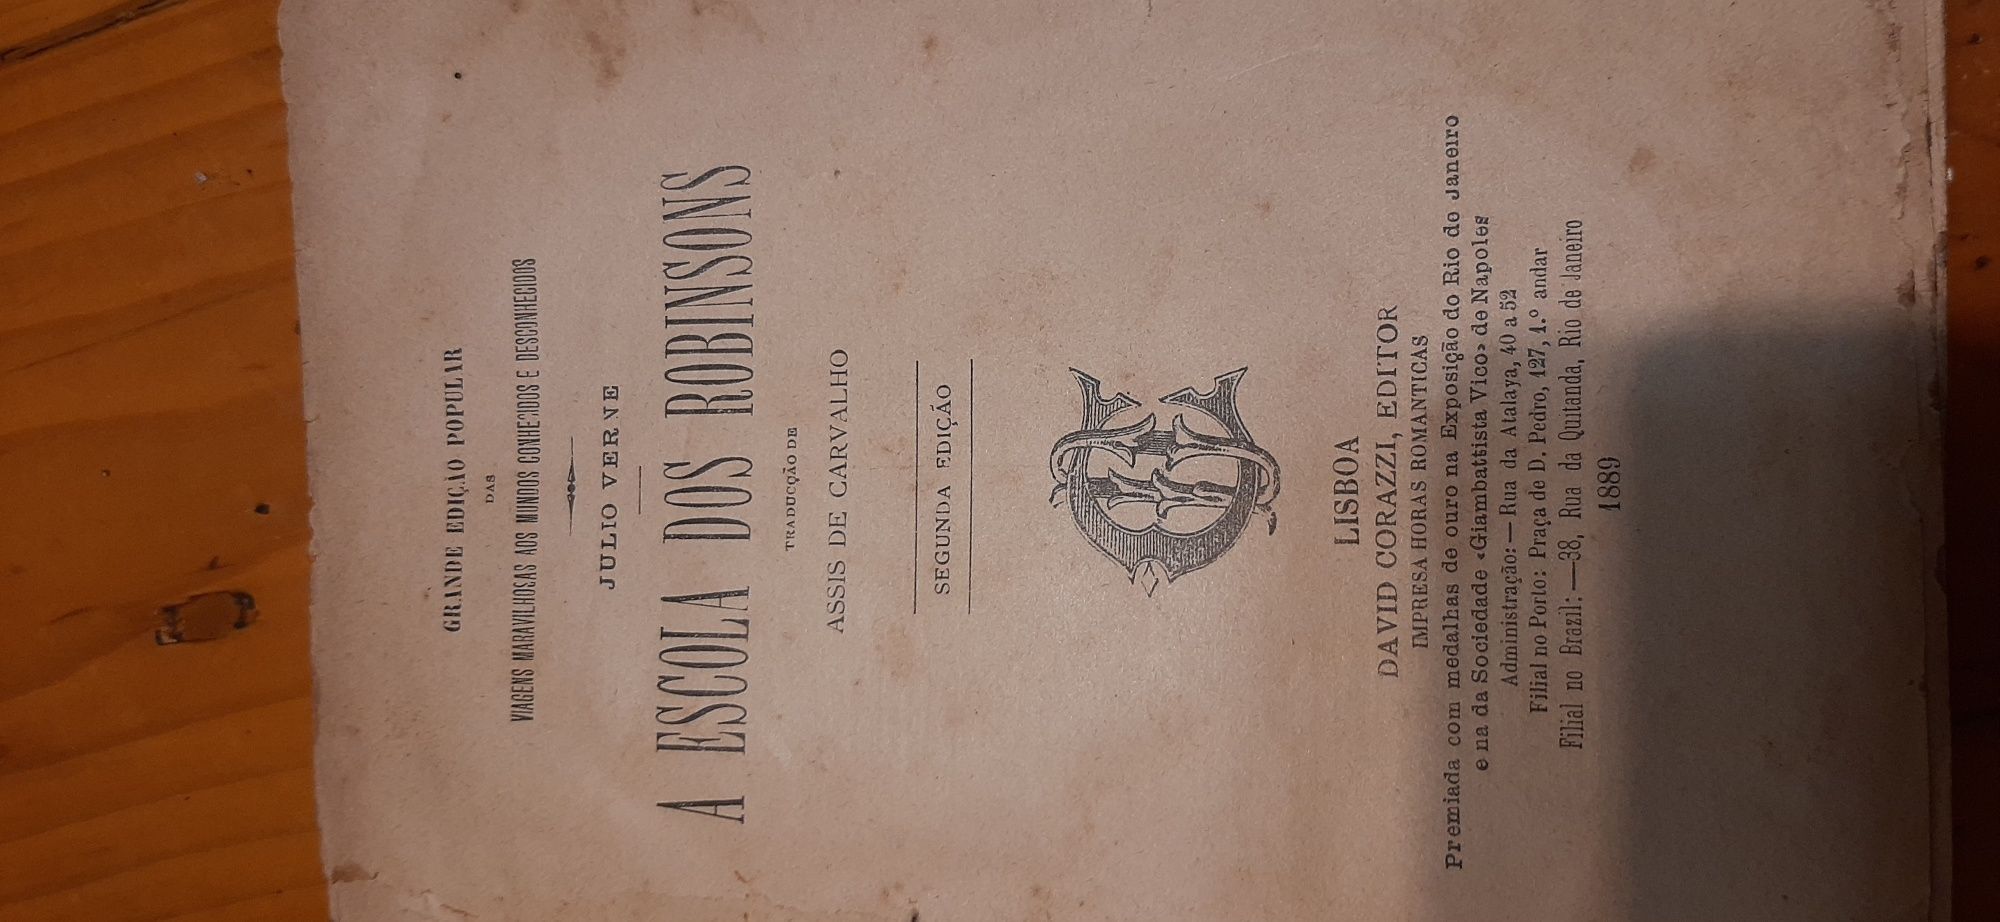 Antigo Livro de Júlio Verne  Áno  1889 2 edição .